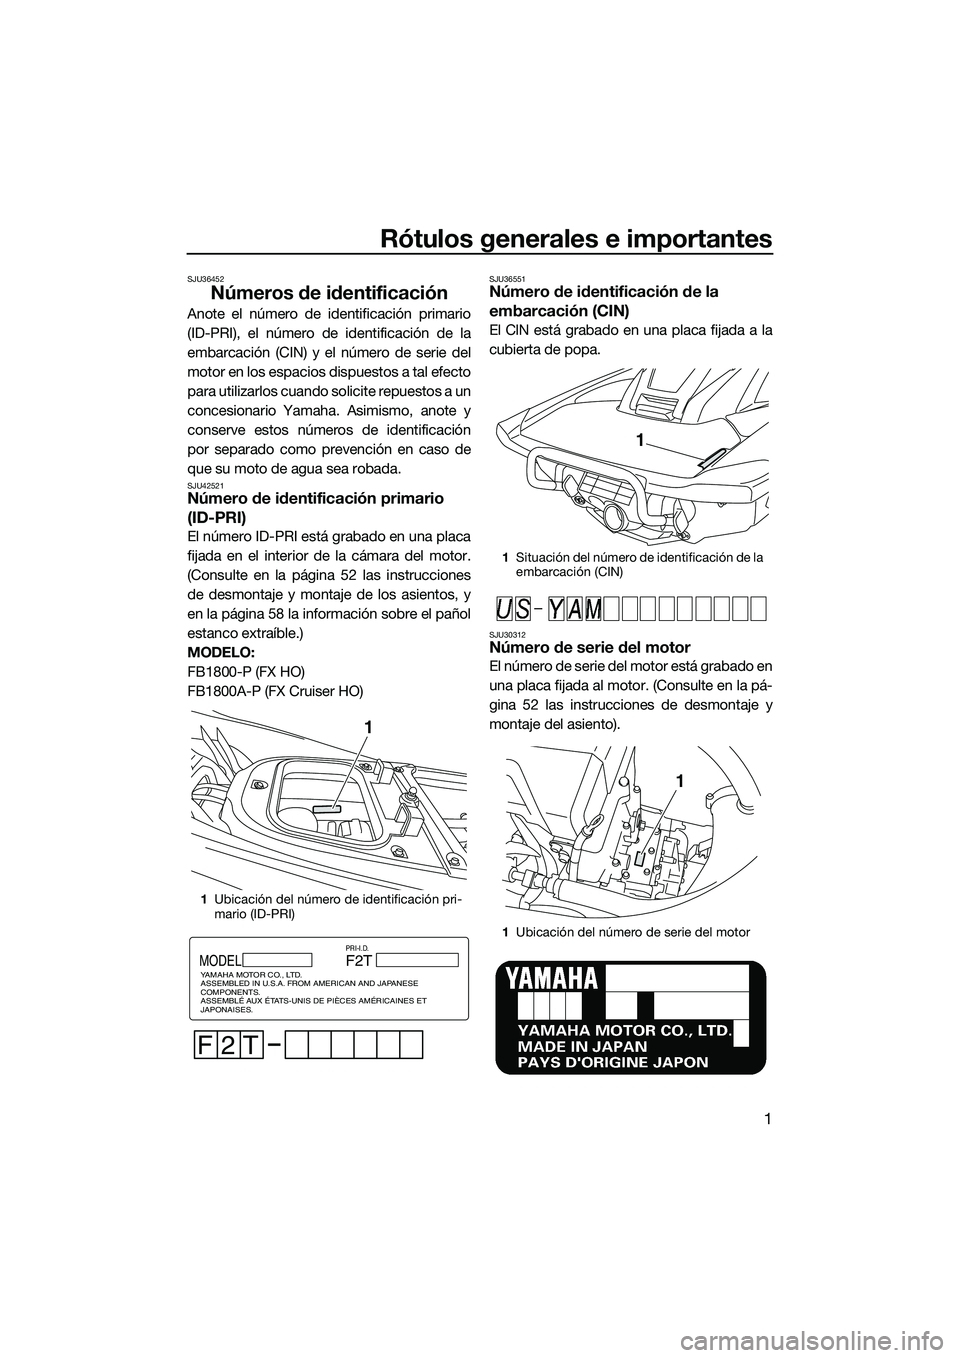 YAMAHA FX HO 2015  Manuale de Empleo (in Spanish) Rótulos generales e importantes
1
SJU36452
Números de identificación
Anote el número de identificación primario
(ID-PRI), el número de identificación de la
embarcación (CIN) y el número de se